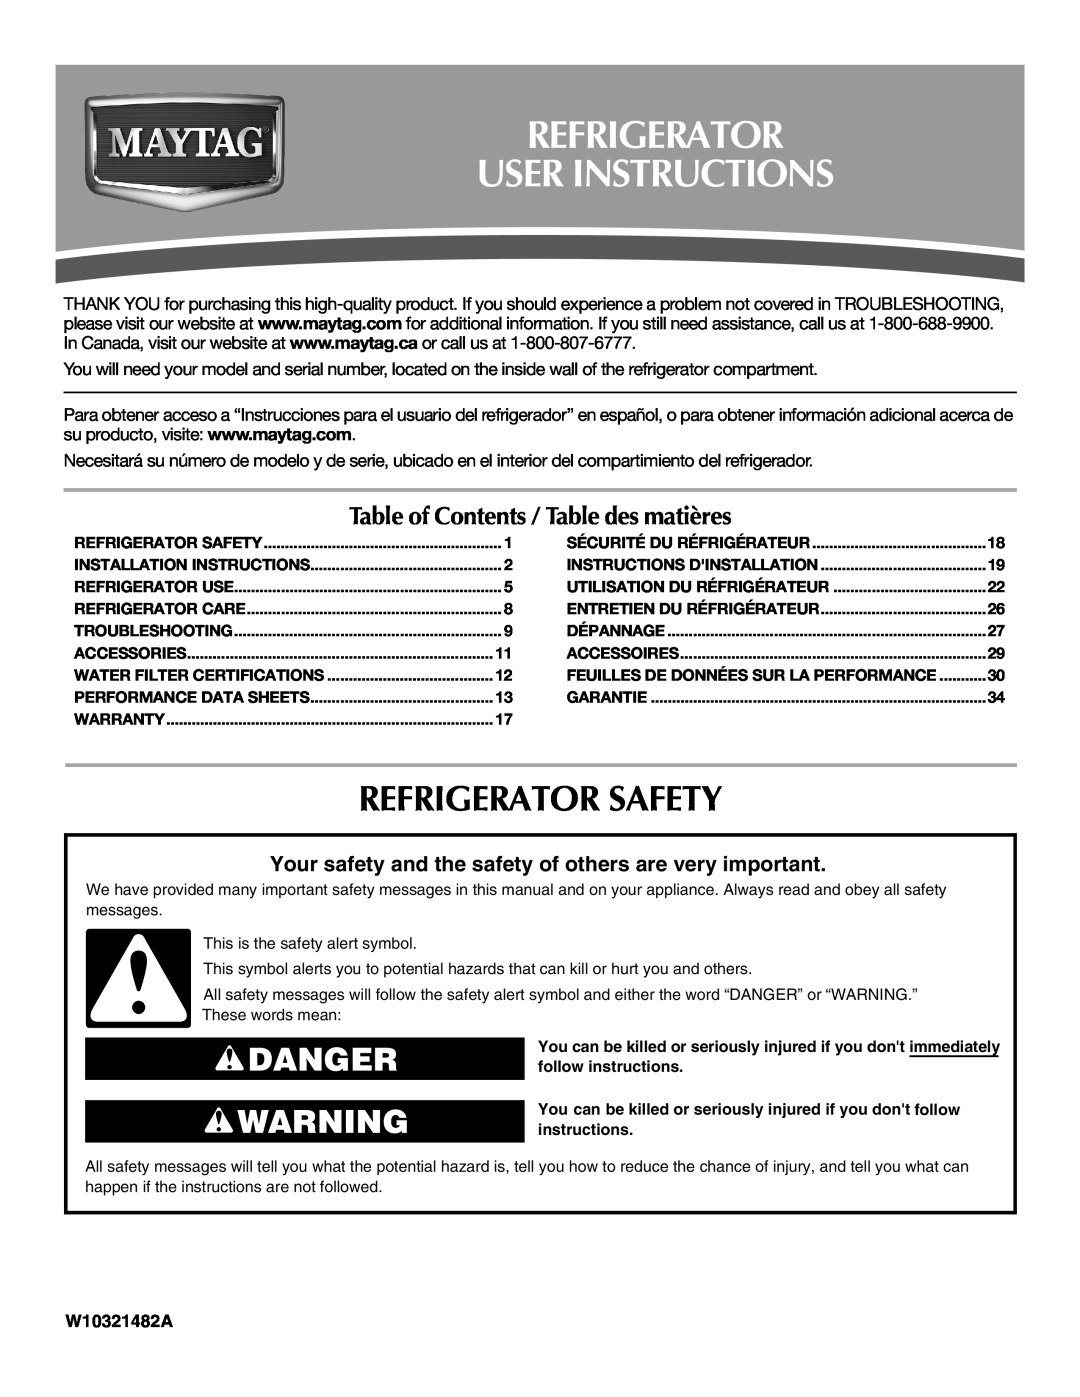 Maytag W10321482A installation instructions Refrigerator User Instructions, Refrigerator Safety, Danger 